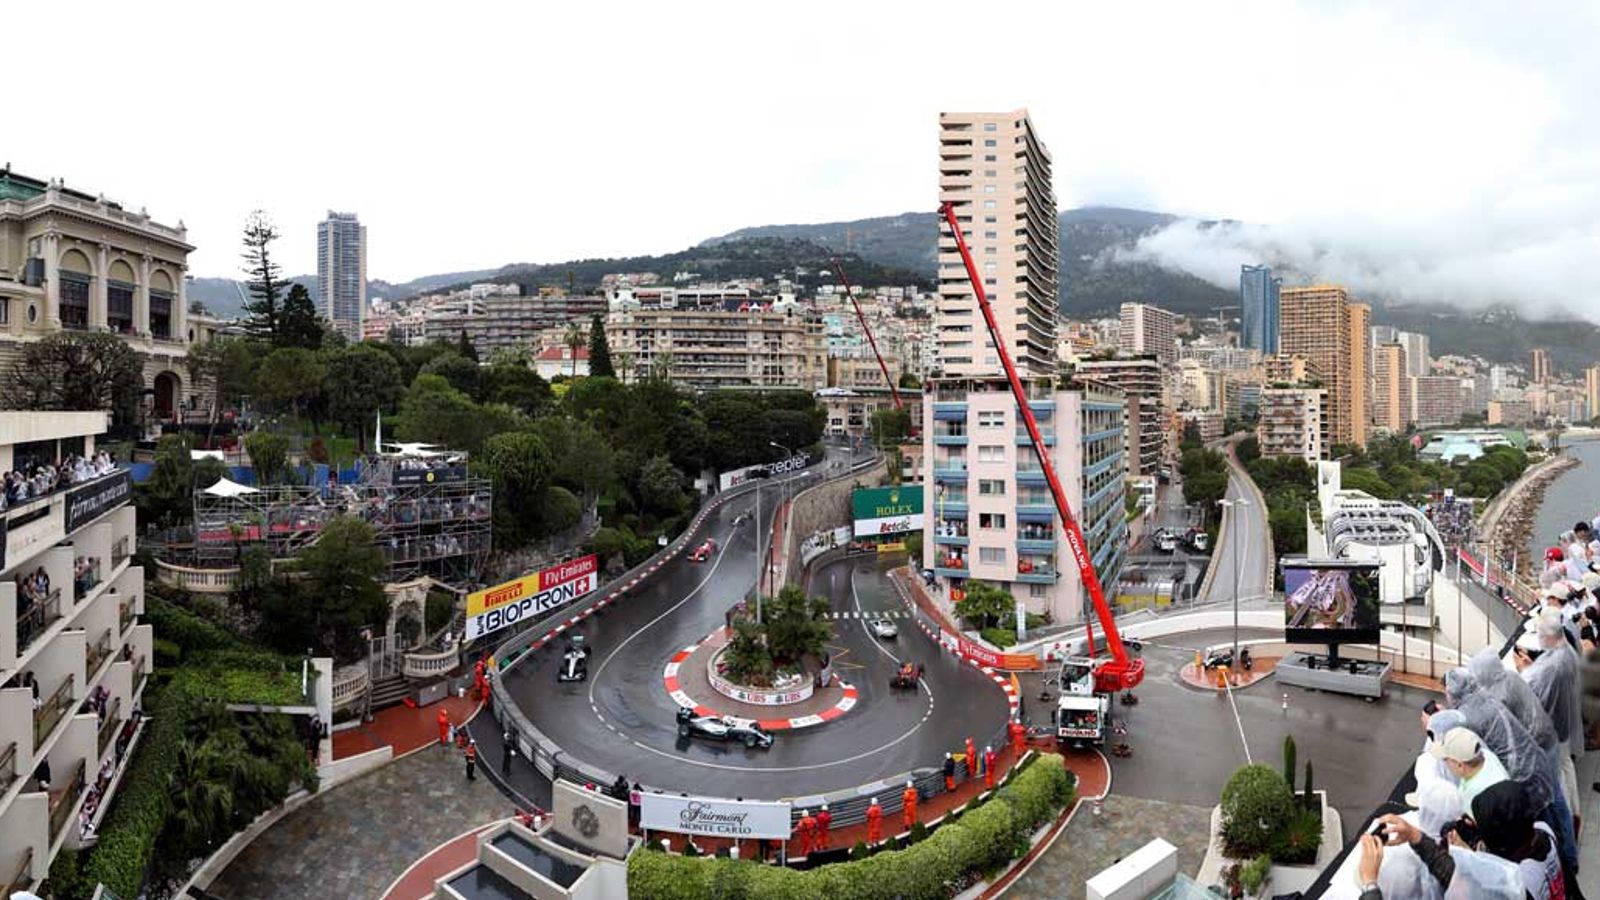 Formule 1: regenachtige race in Monaco dreigt – kans voor Hamilton?  |  Formule 1 Nieuws